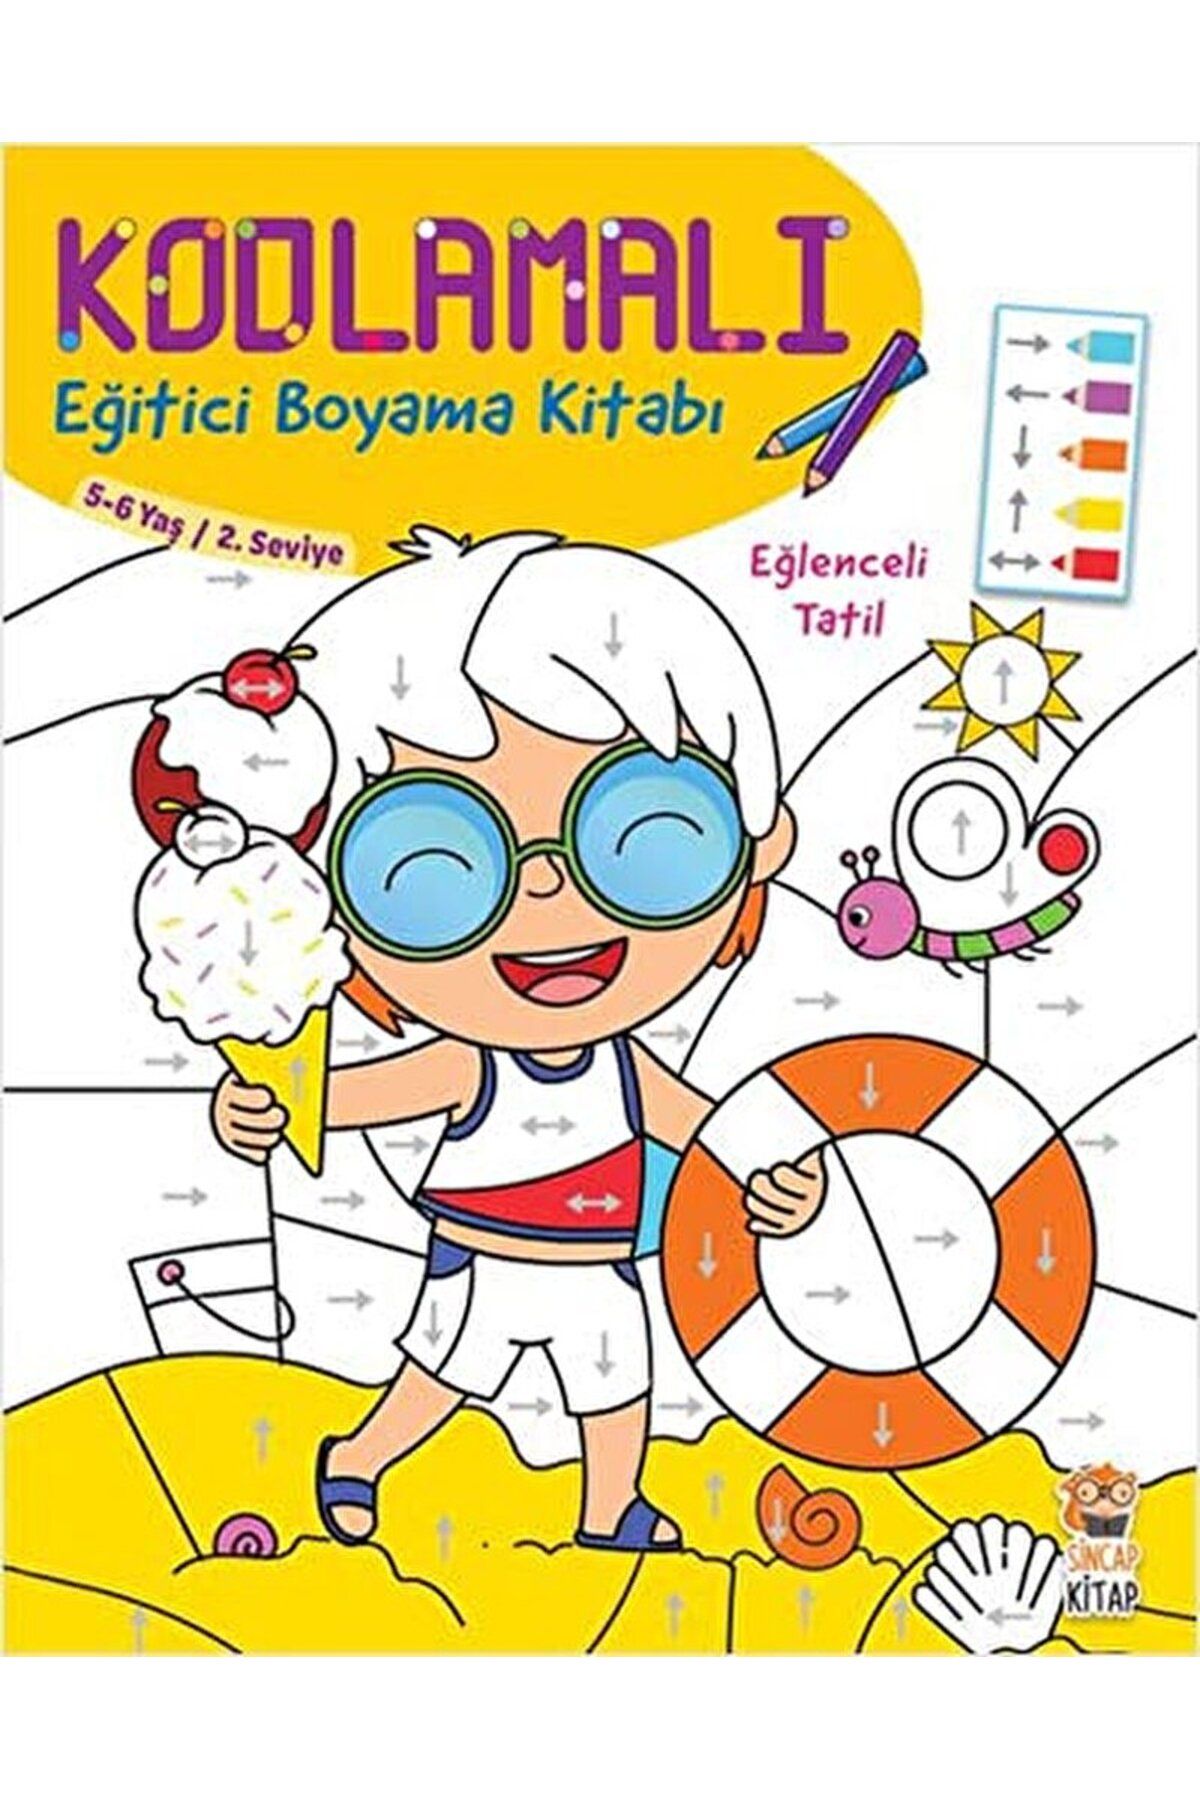 Sincap Kitap Kodlamalı Eğitici Boyama Kitabı - Eğlenceli Tatil (5- 6 Yaş 2. Seviye) / 9786053050629